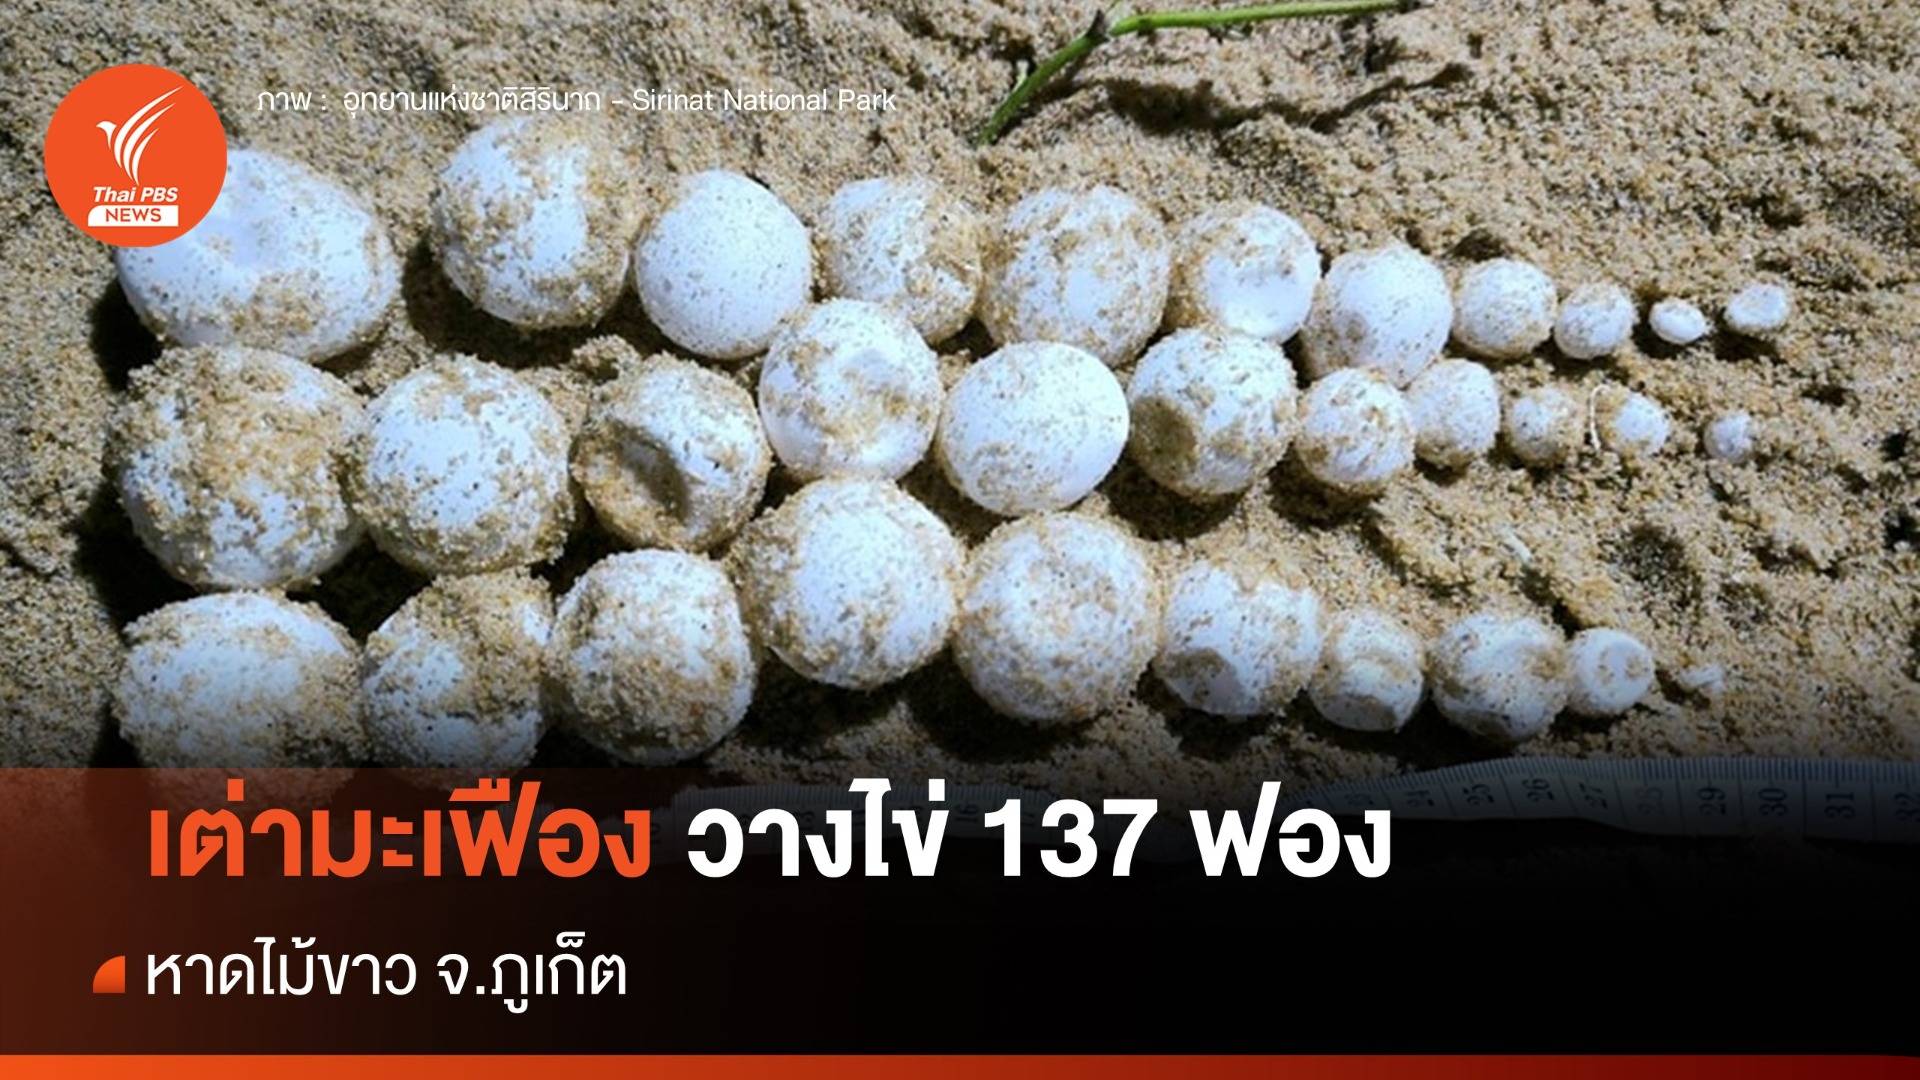 พบเต่ามะเฟืองวางไข่ 137 ฟอง หาดไม้ขาว จ.ภูเก็ต